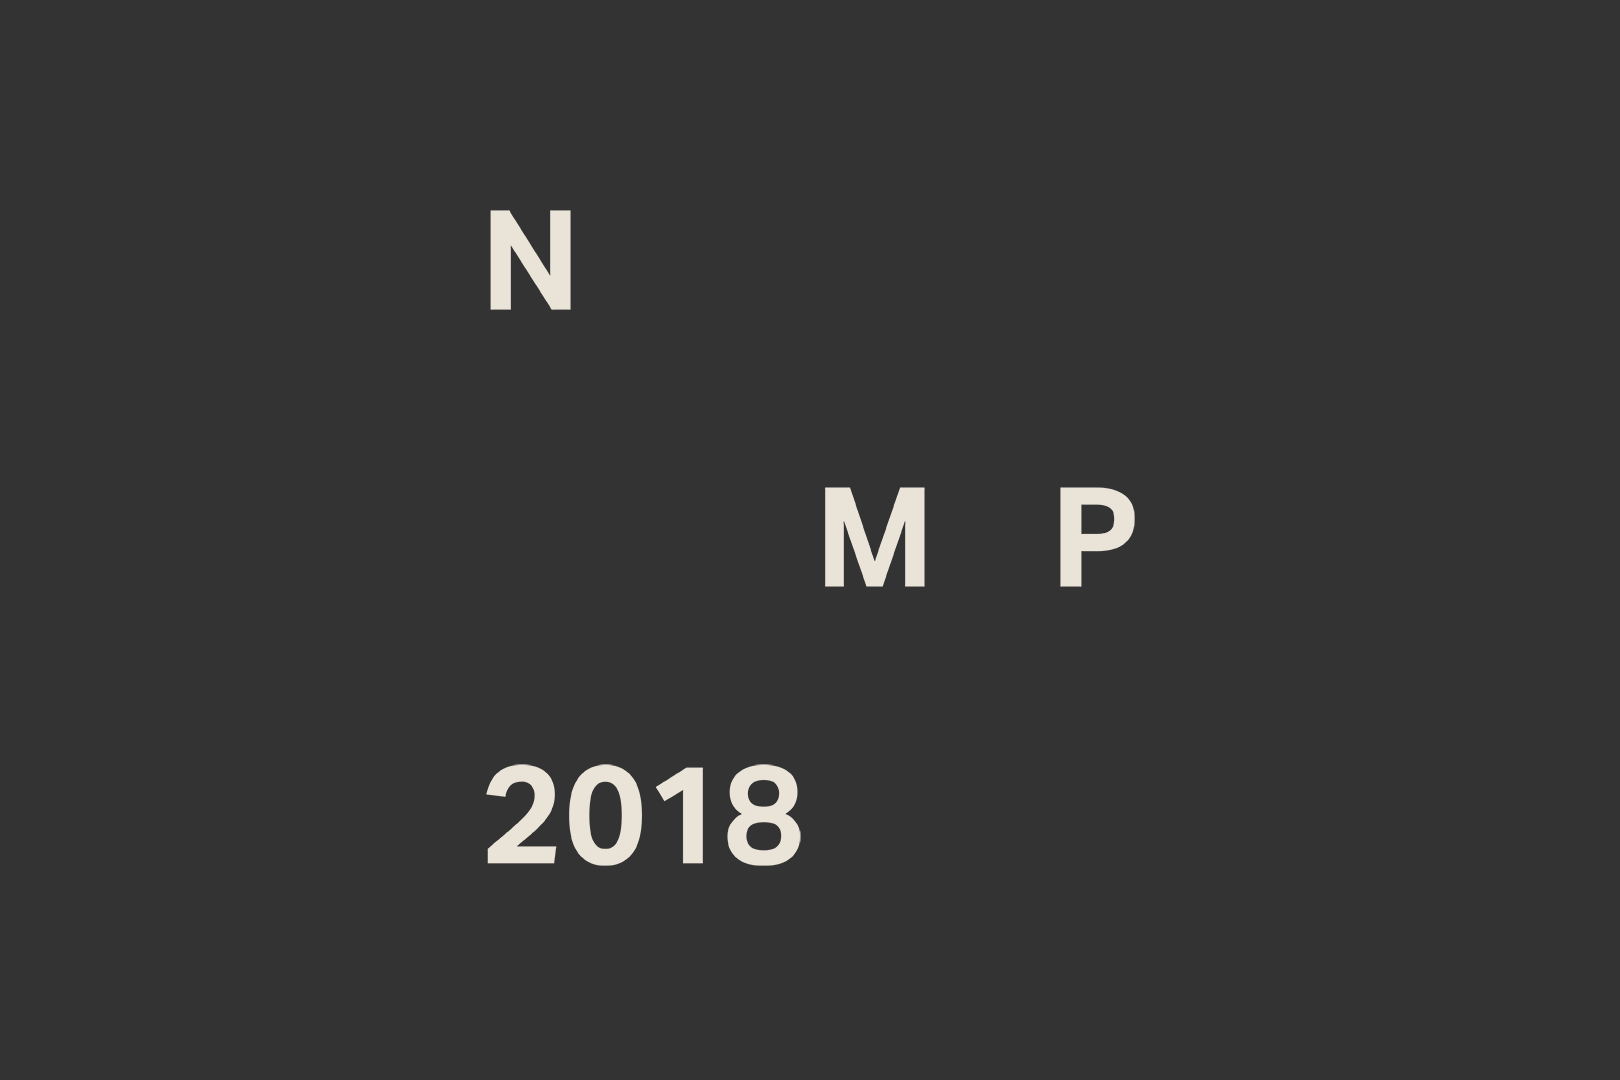 Erscheinungsbild für den NMP